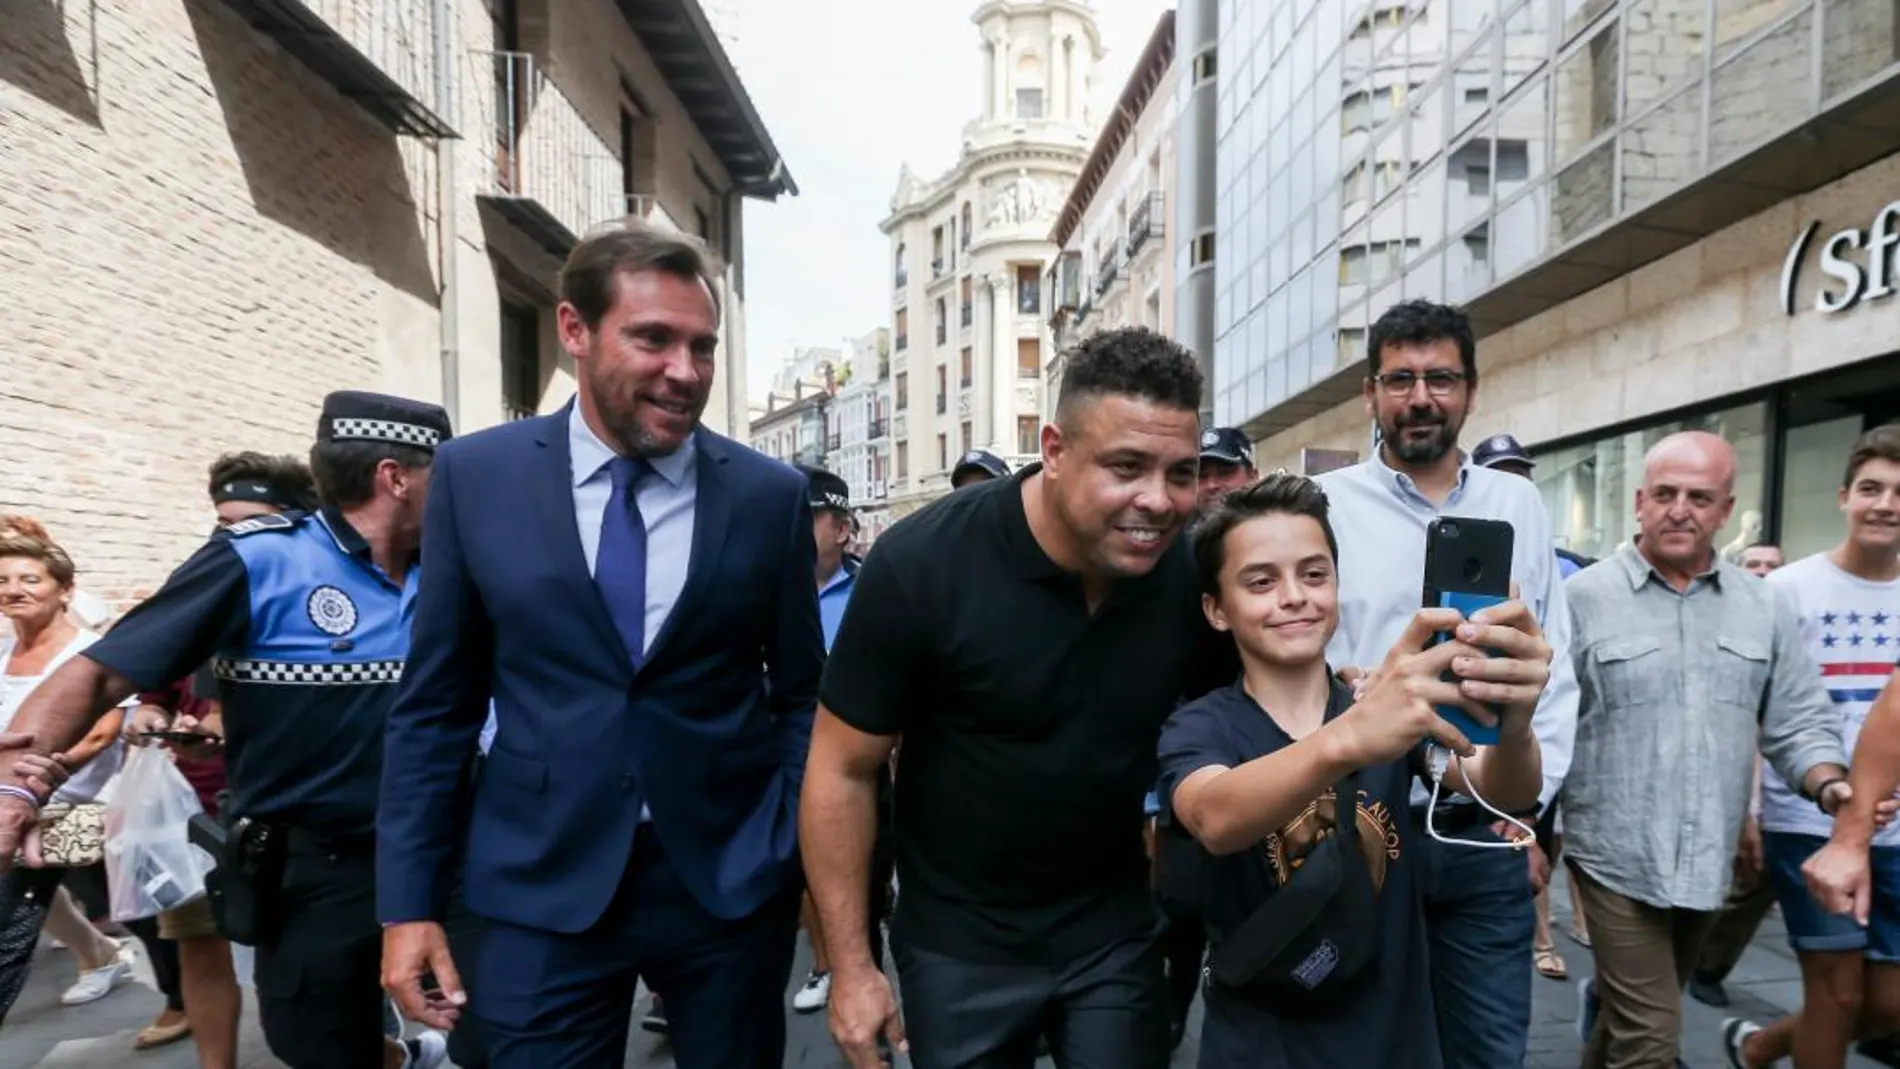 La expectación es máxima con la llegada de Ronaldo a Valladolid, como se pudo comprobar el pasado lunes en las calles vallisoletanas